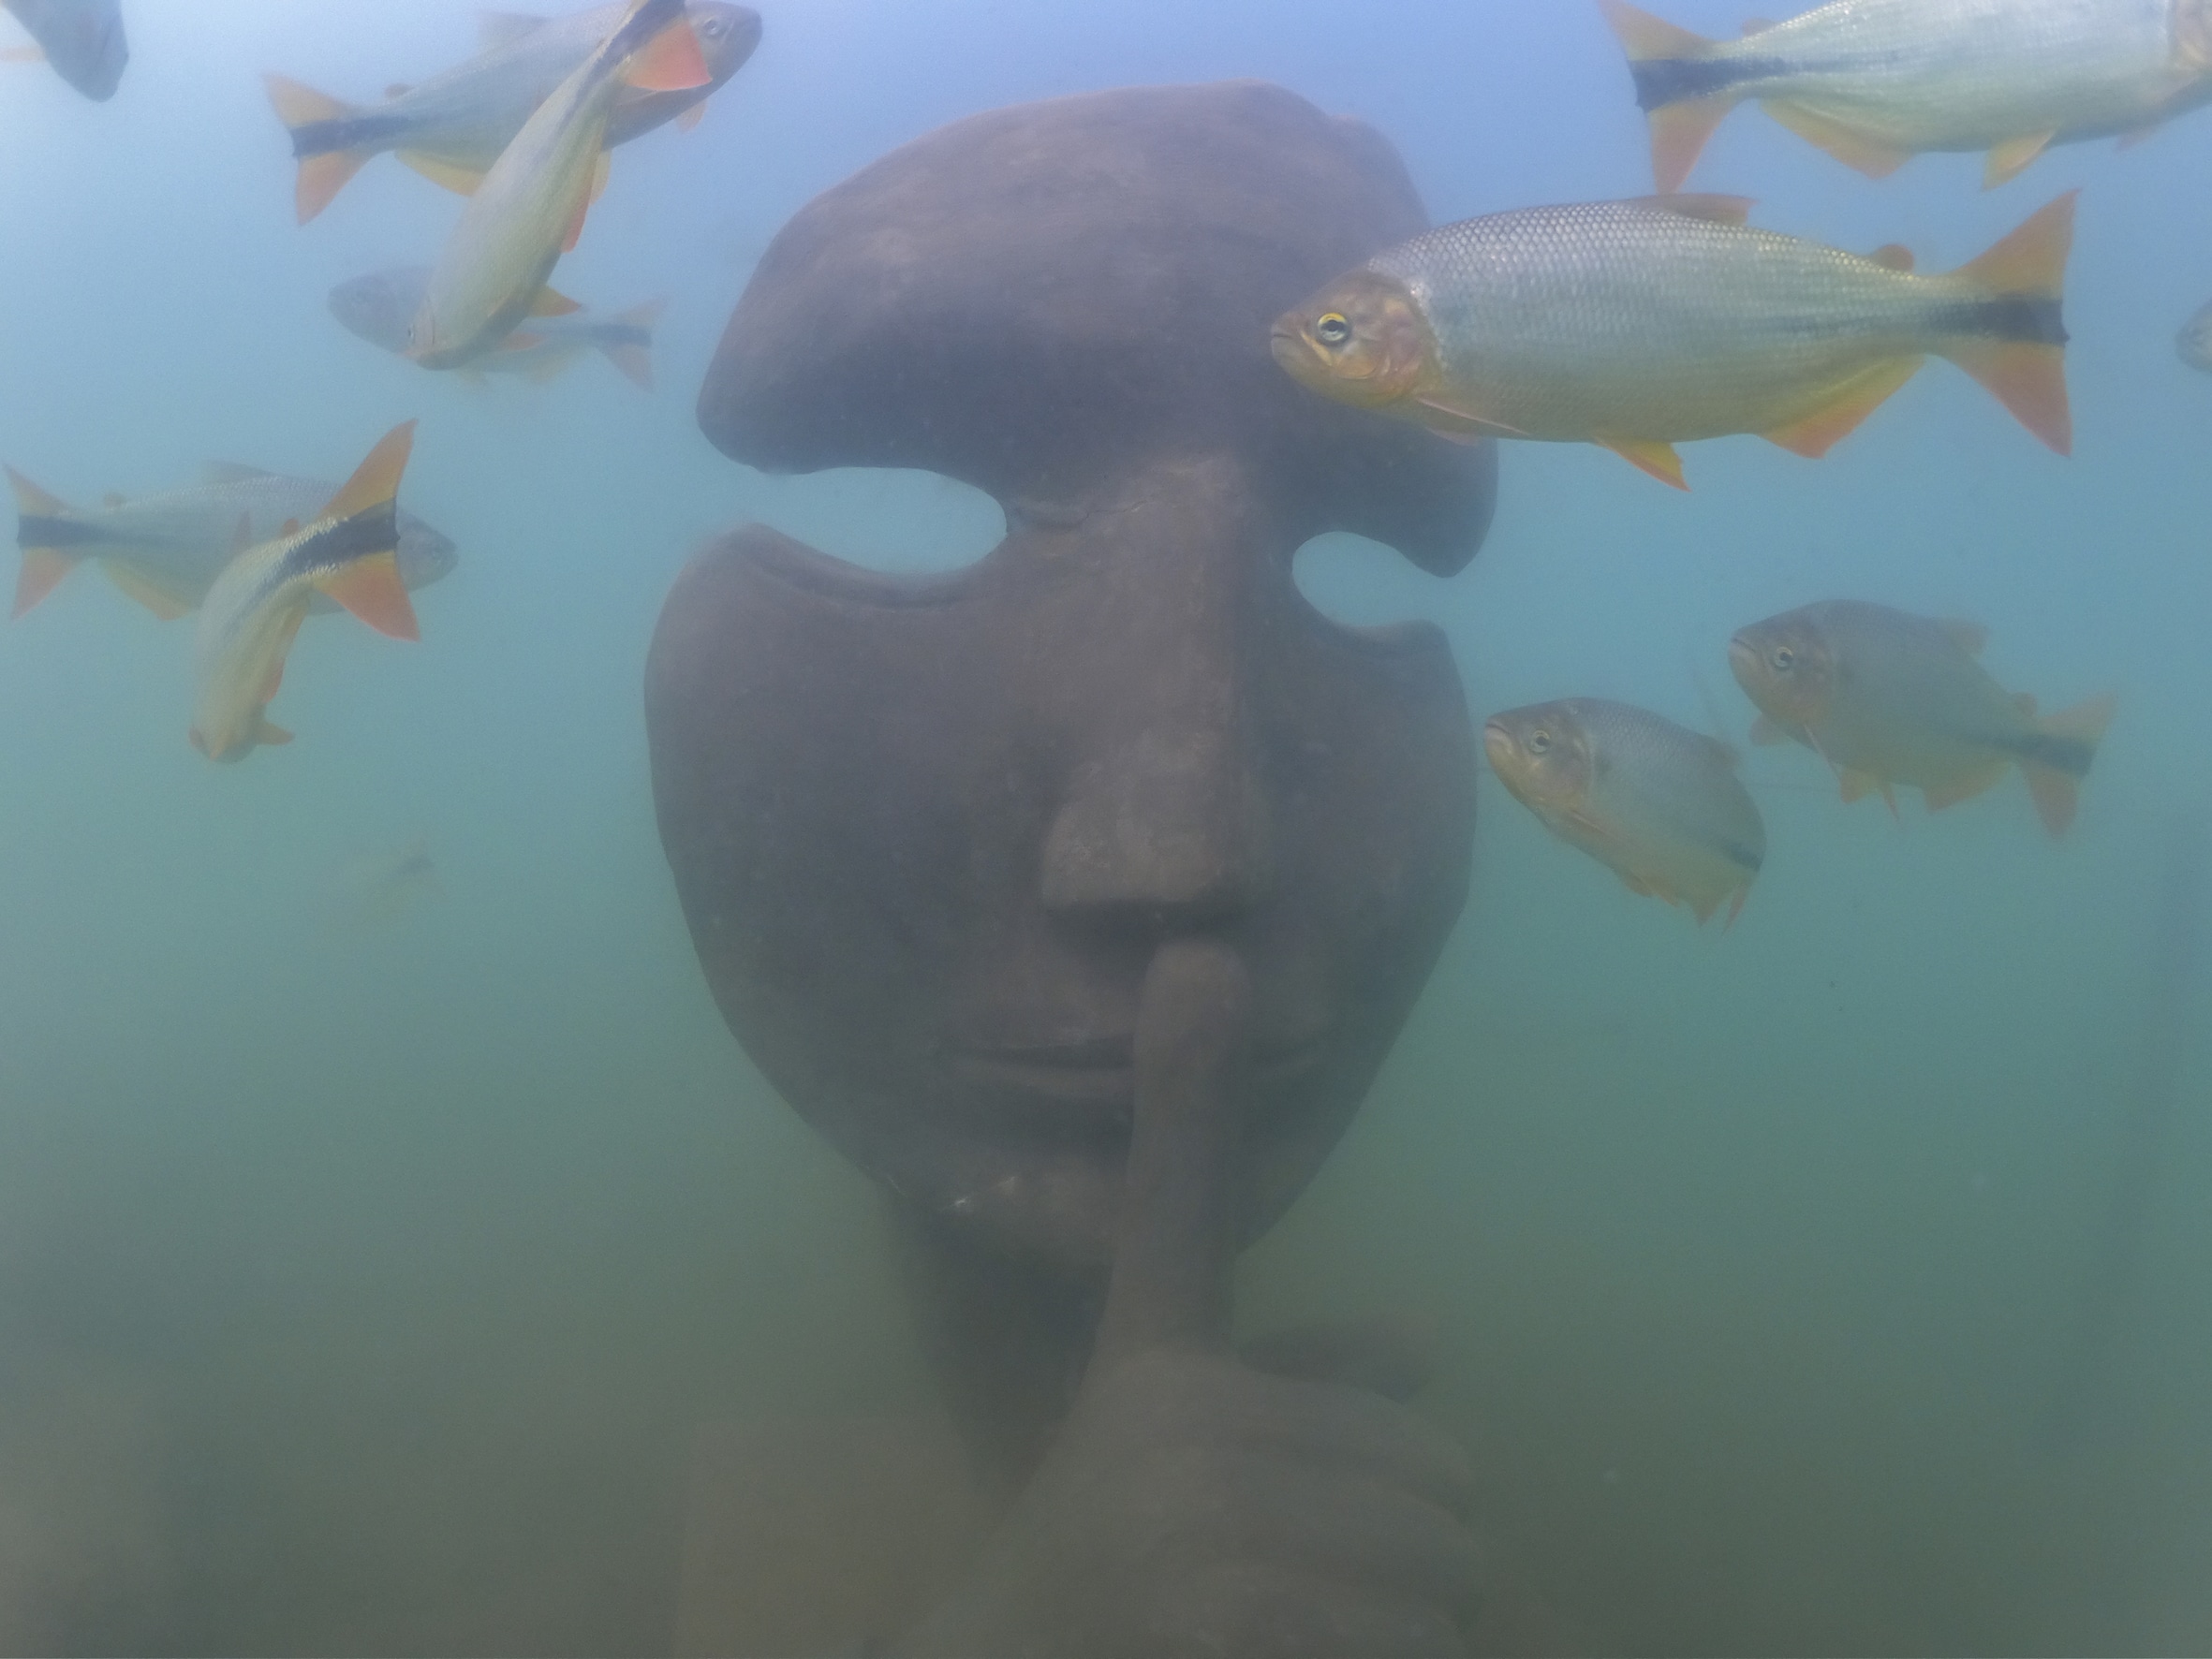 Bonito ganha Museu Subaquático, único no mundo em água doce